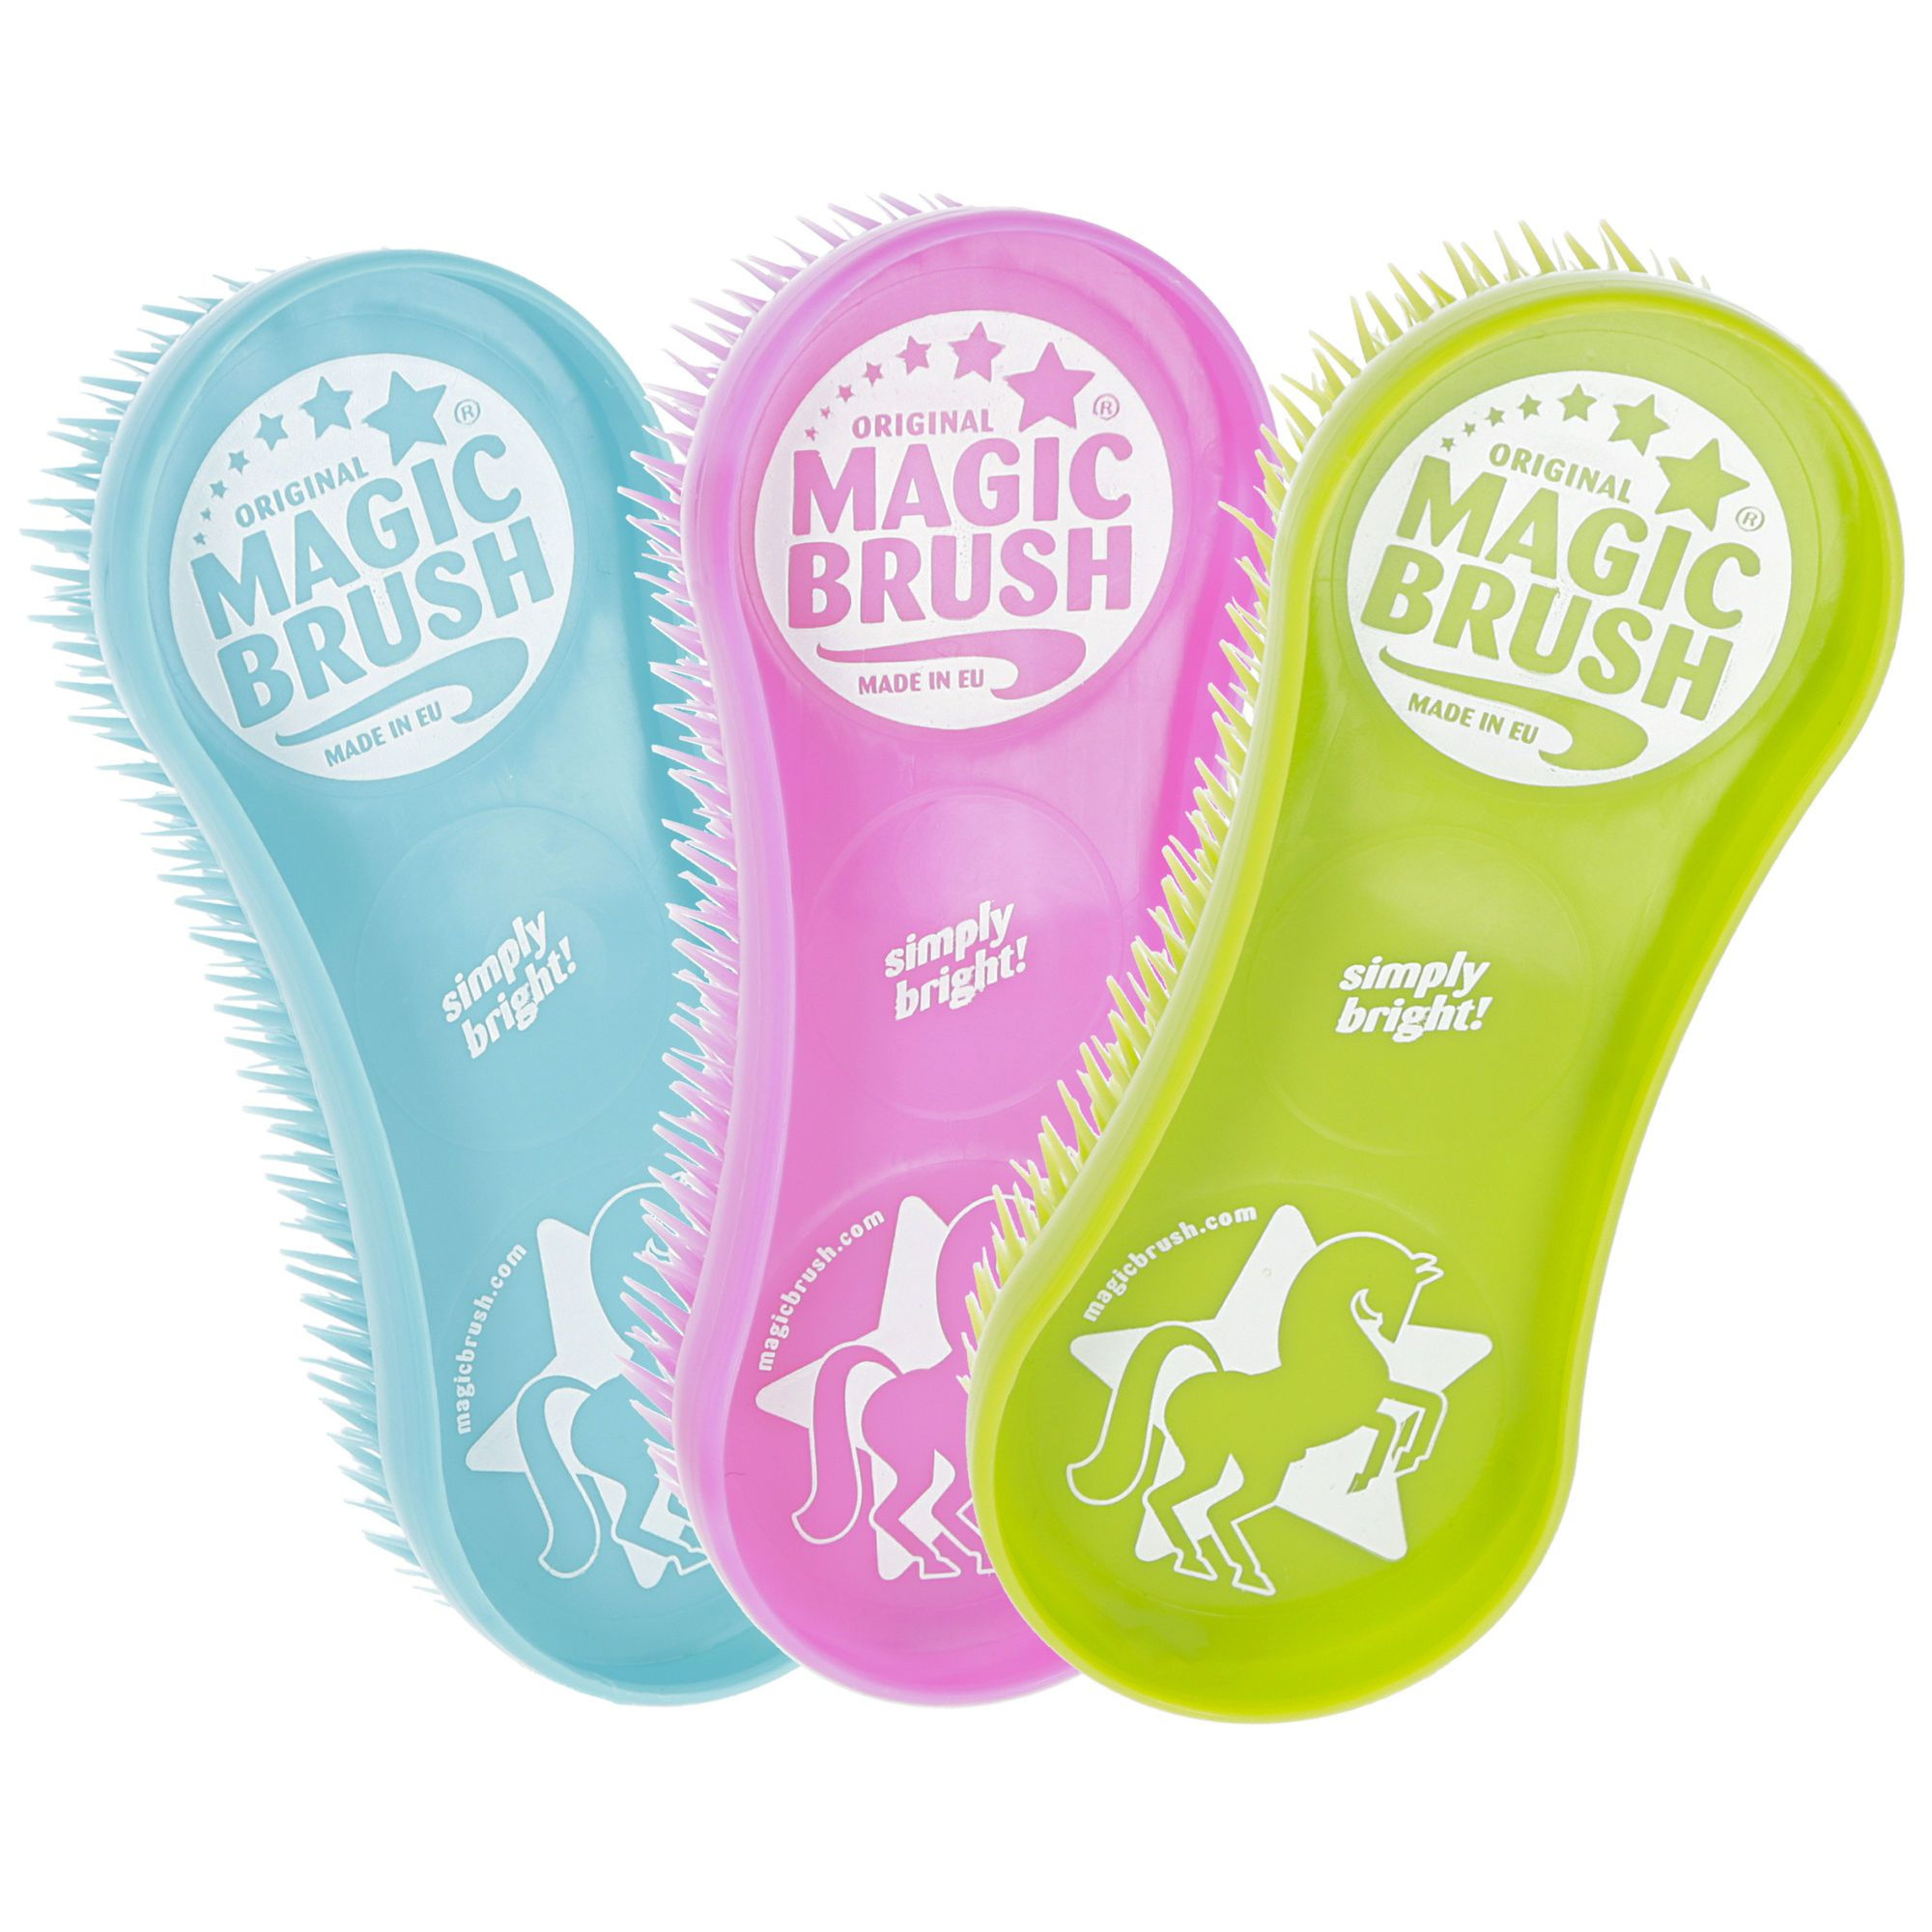 Magic Brush Body Shining Horse Brush